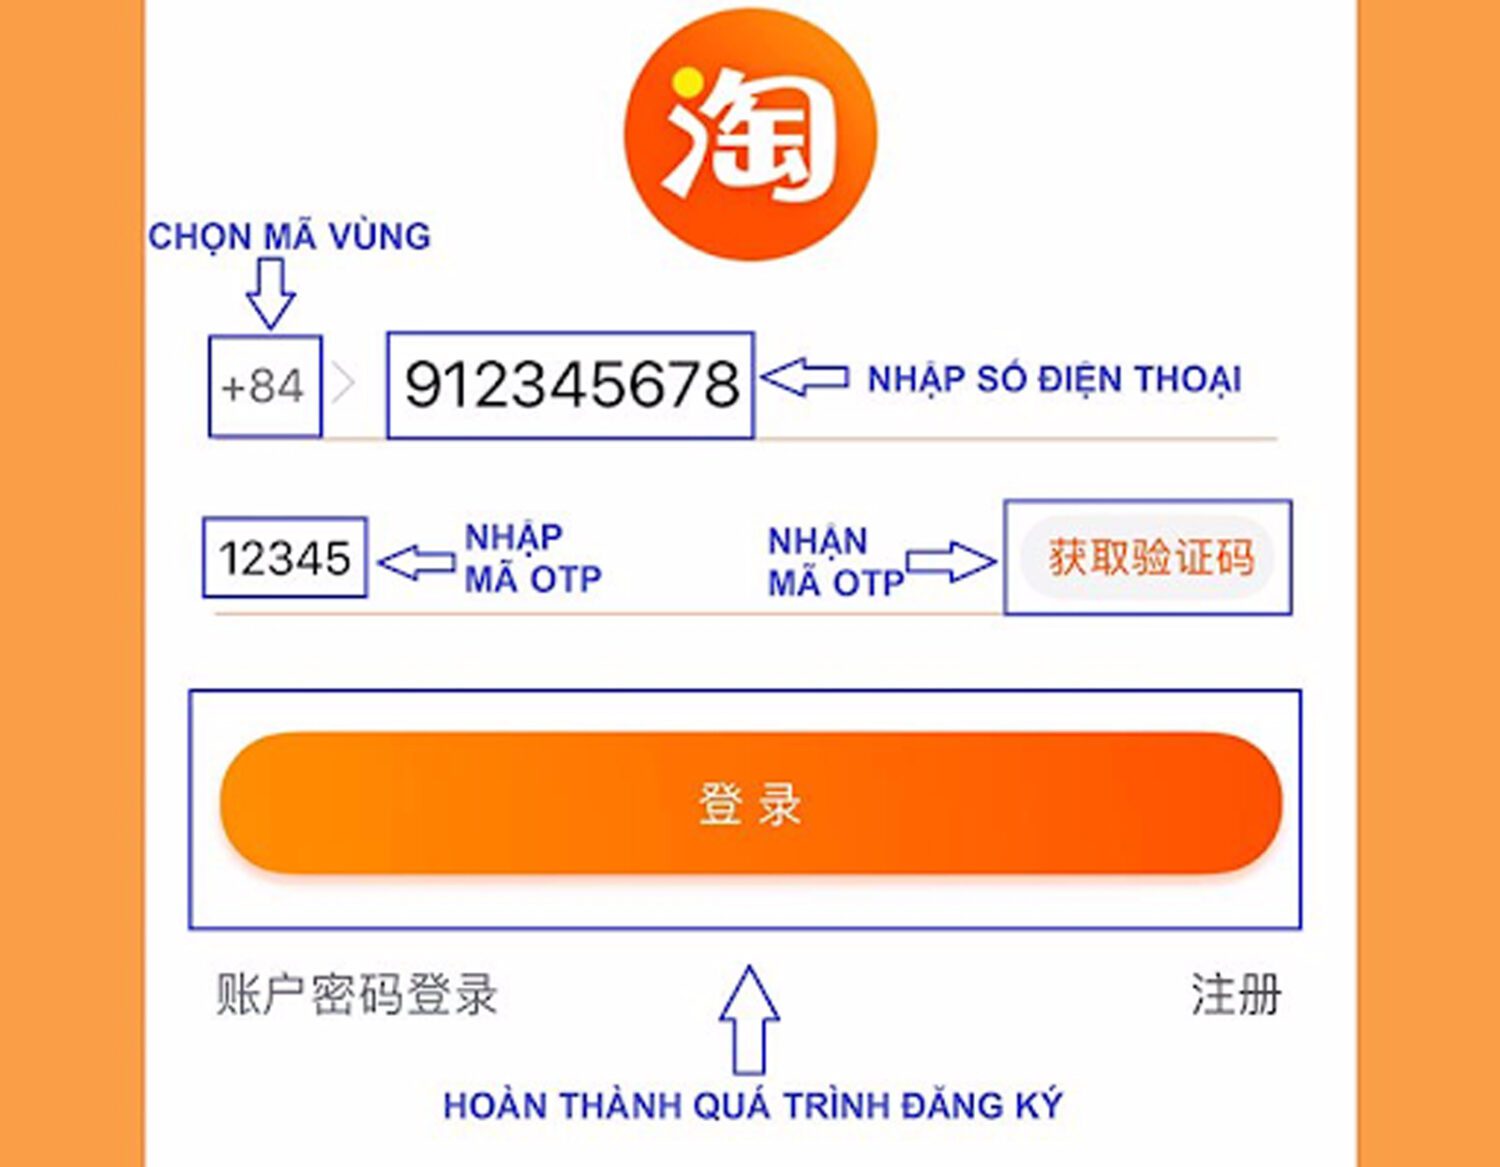 Tạo tài khoản Taobao để đặt hàng taobao giá rẻ hà nội